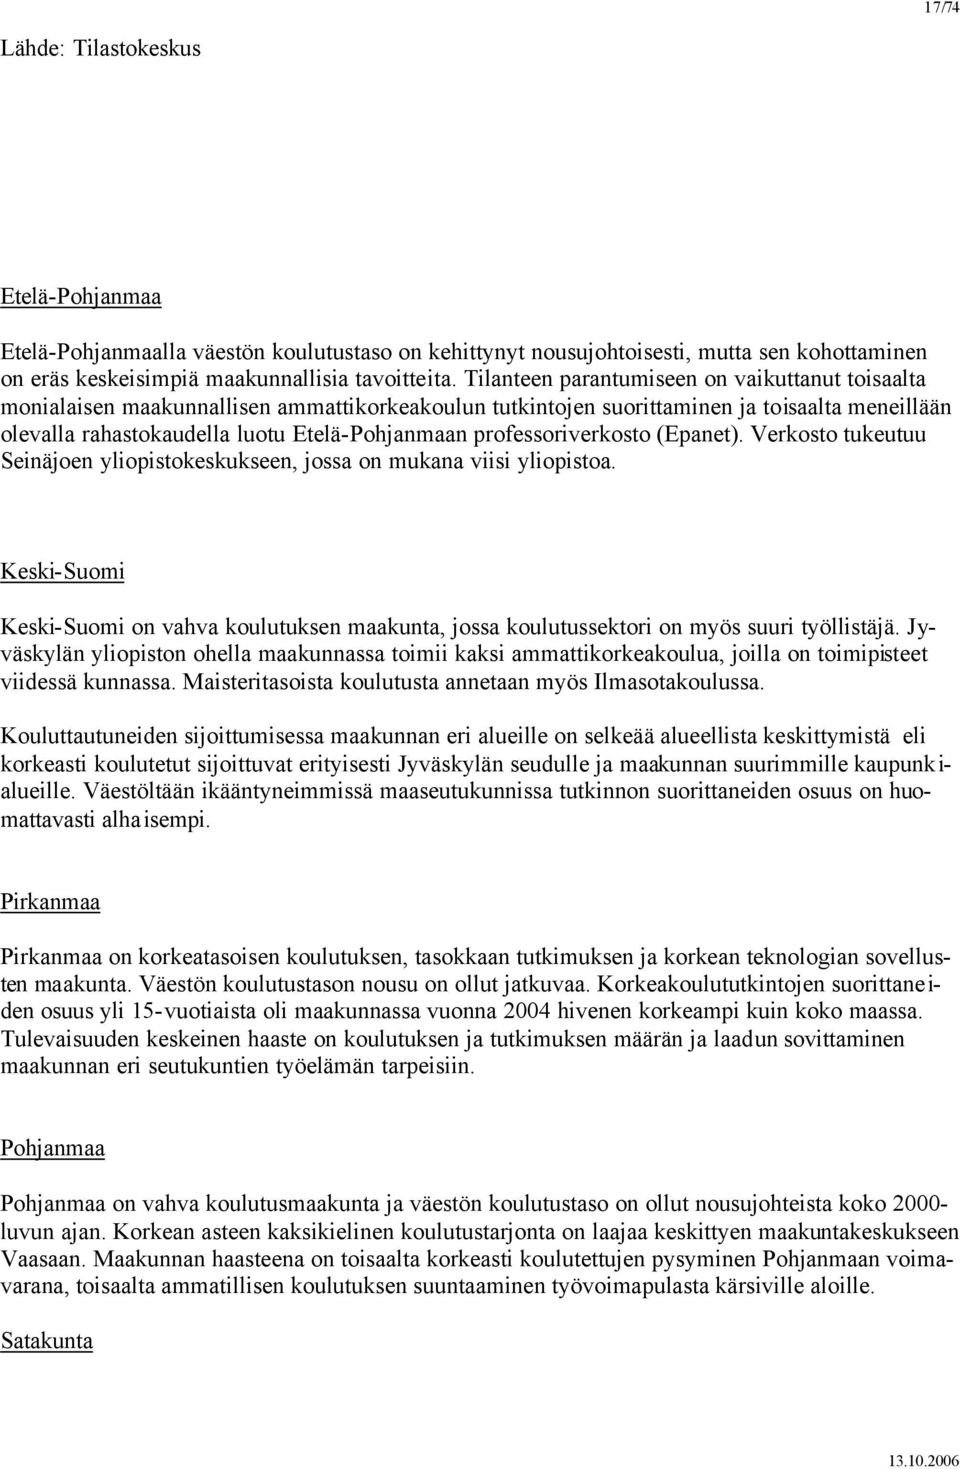 professoriverkosto (Epanet). Verkosto tukeutuu Seinäjoen yliopistokeskukseen, jossa on mukana viisi yliopistoa.